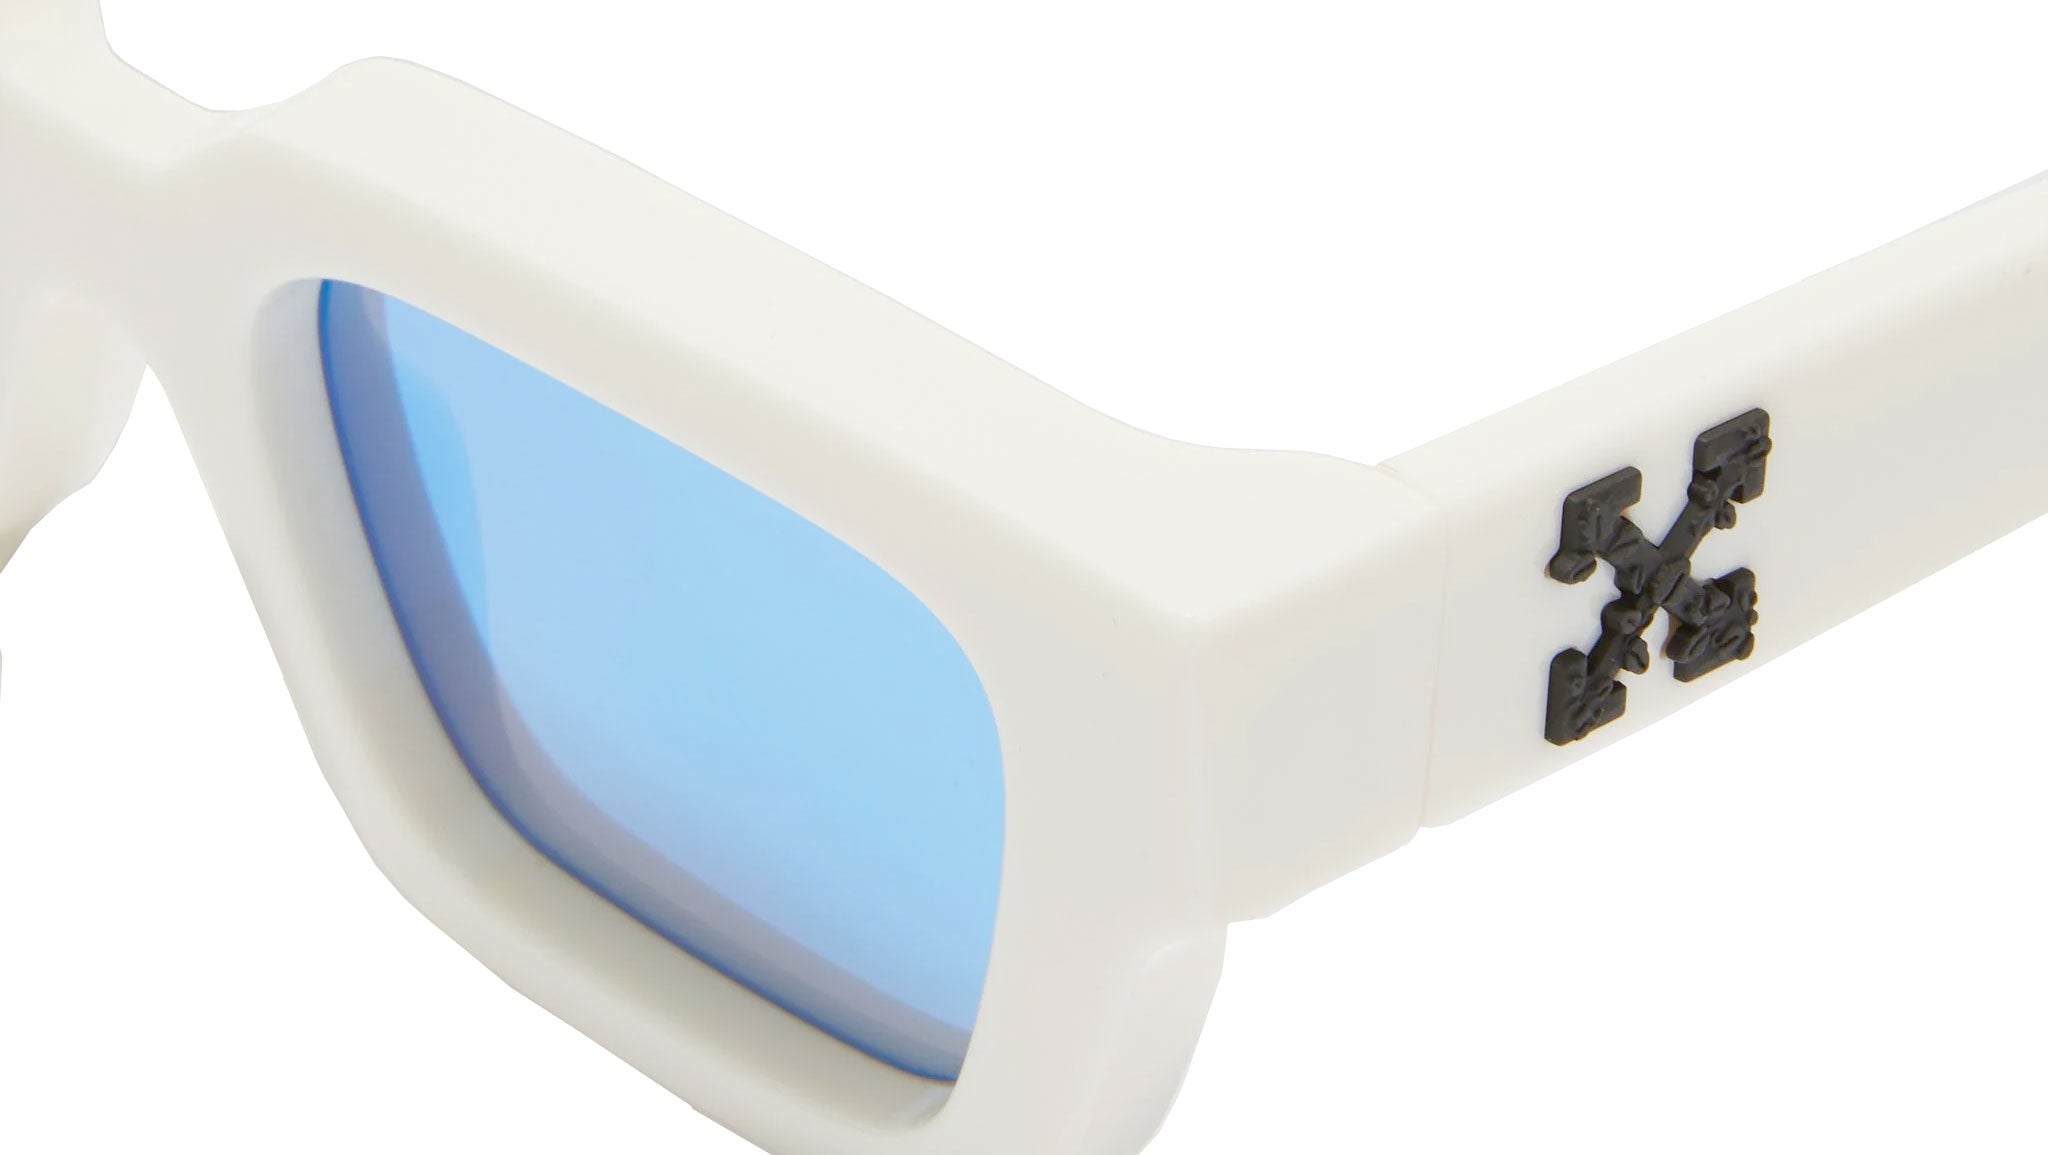 Off-White Virgil White 0145 Sunglasses